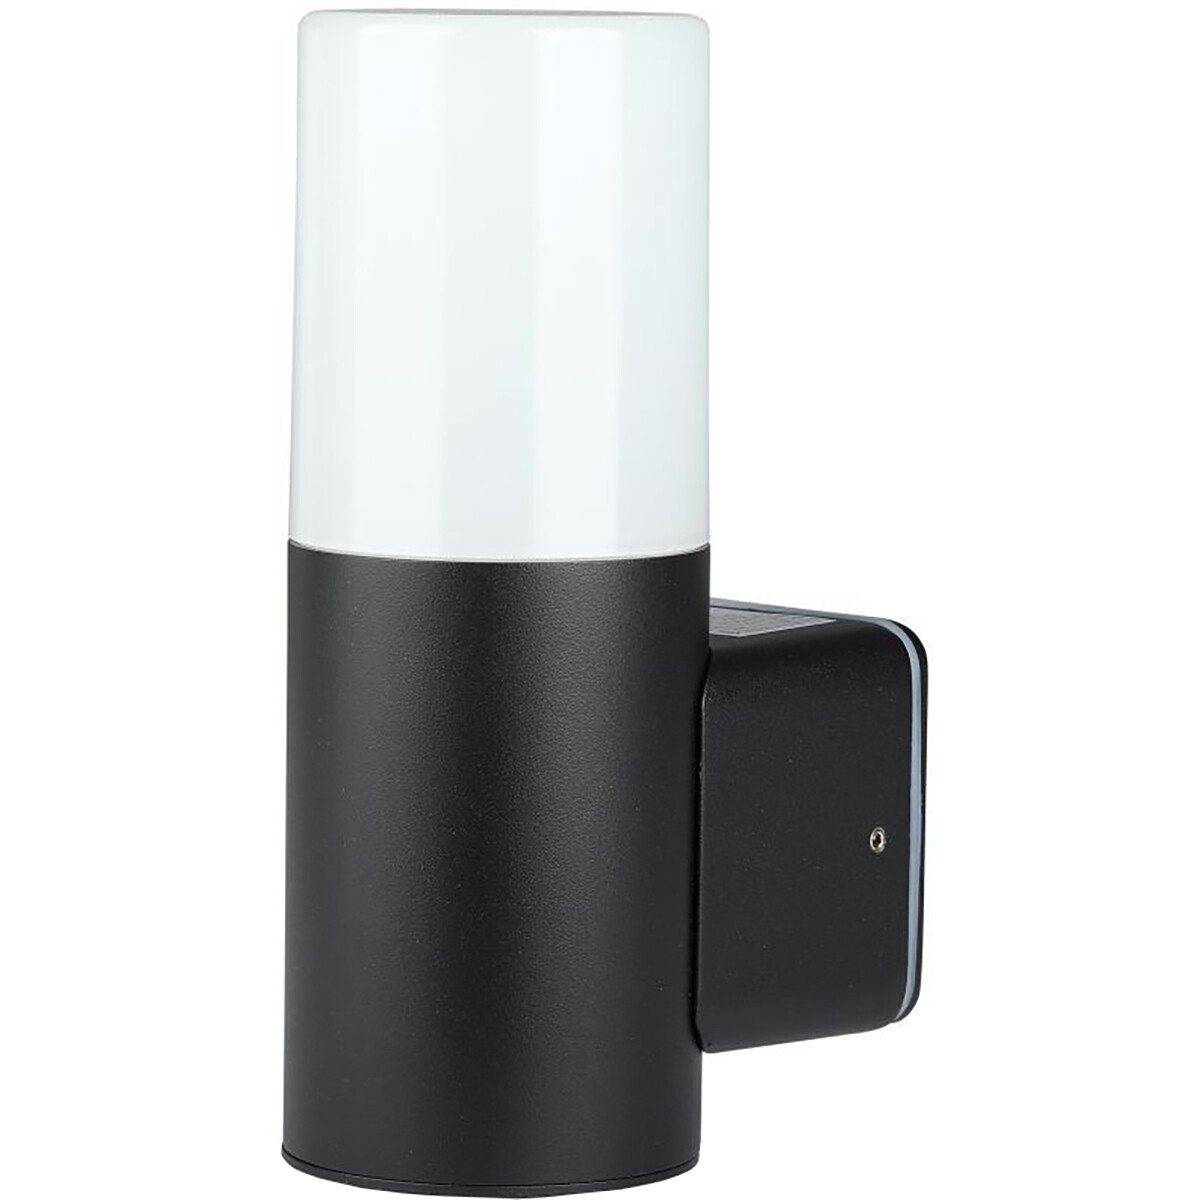 LED Tuinverlichting - Wandlamp Buitenlamp - Viron Hyno - GU10 Fitting - Rond - Mat Zwart - Aluminium